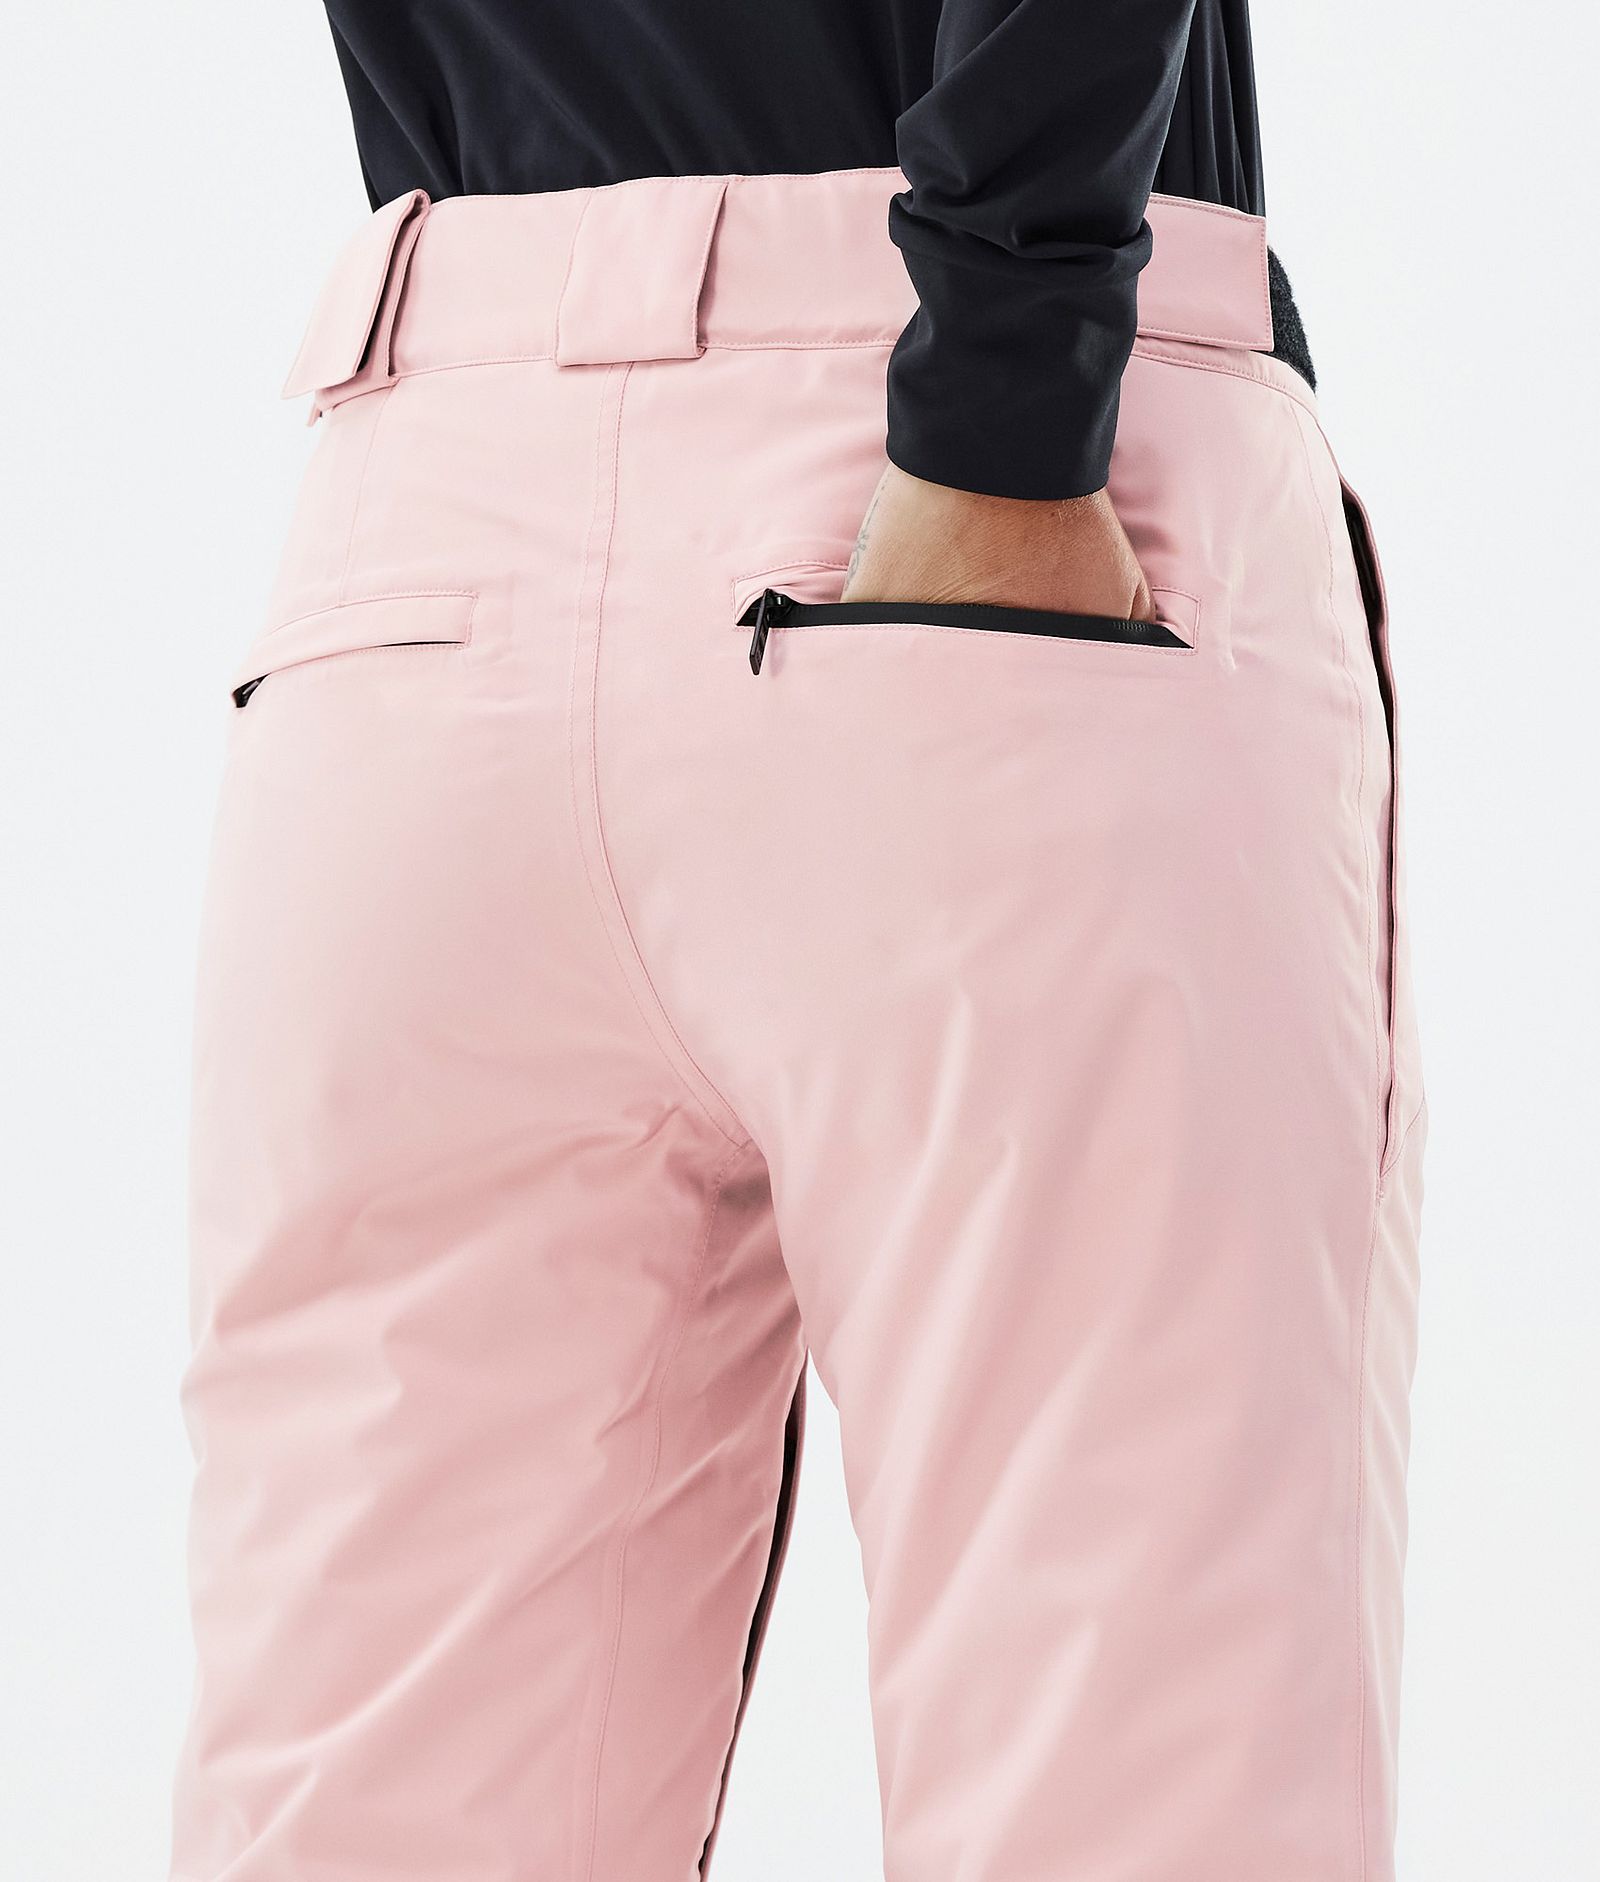 Dope Con W Spodnie Narciarskie Kobiety Soft Pink, Zdjęcie 6 z 6